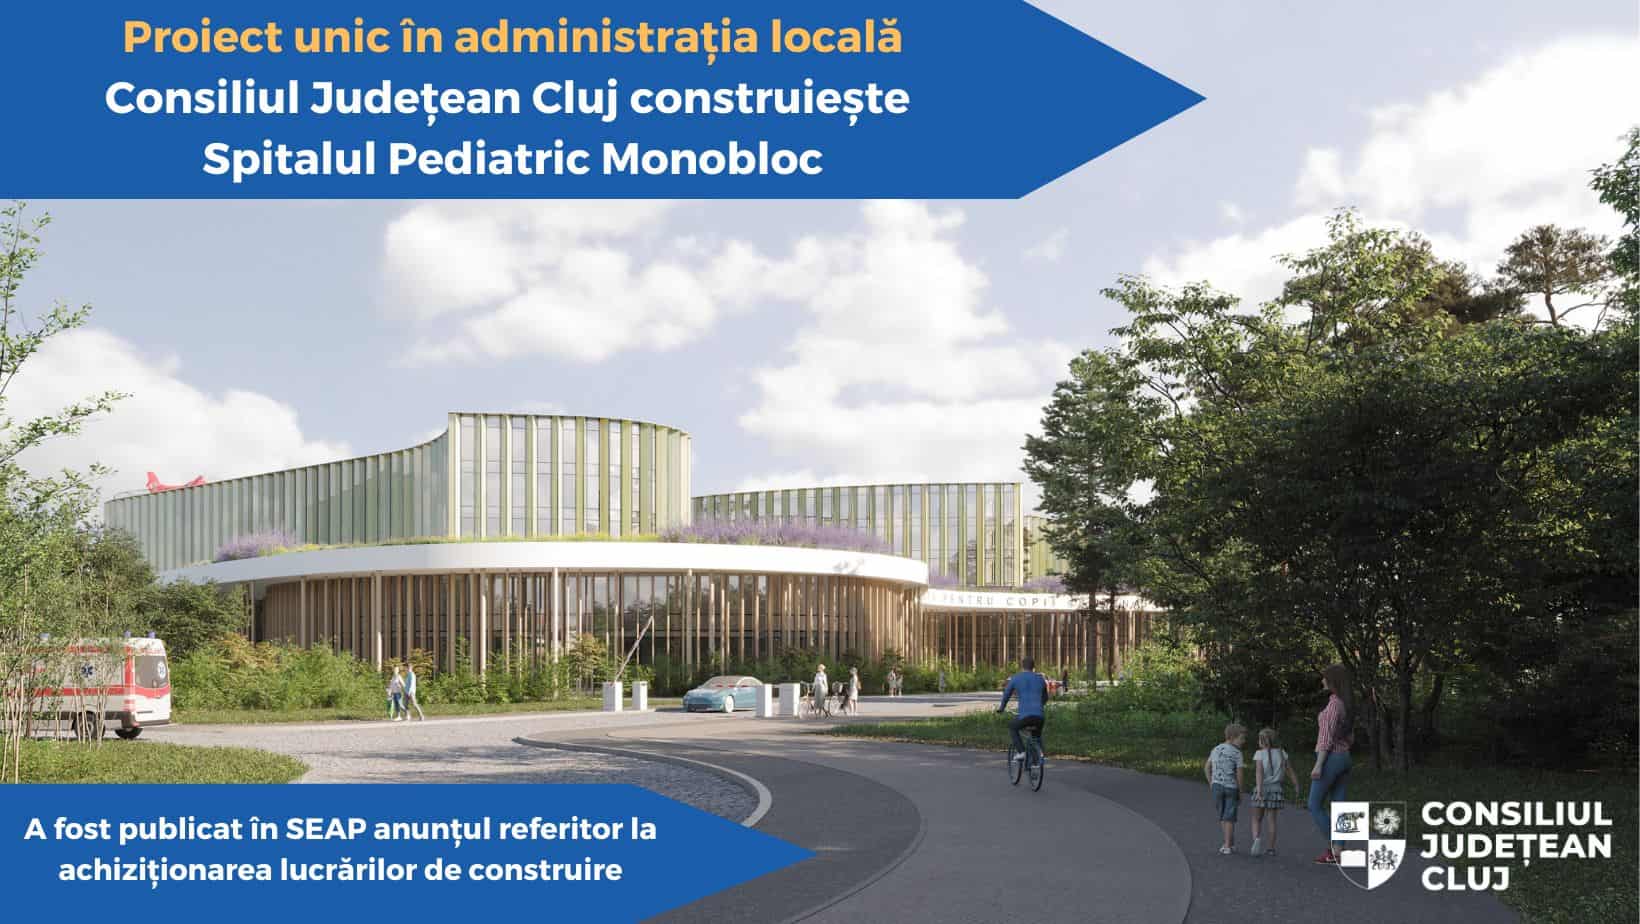 cjc construieste spitalul pediatric monobloc